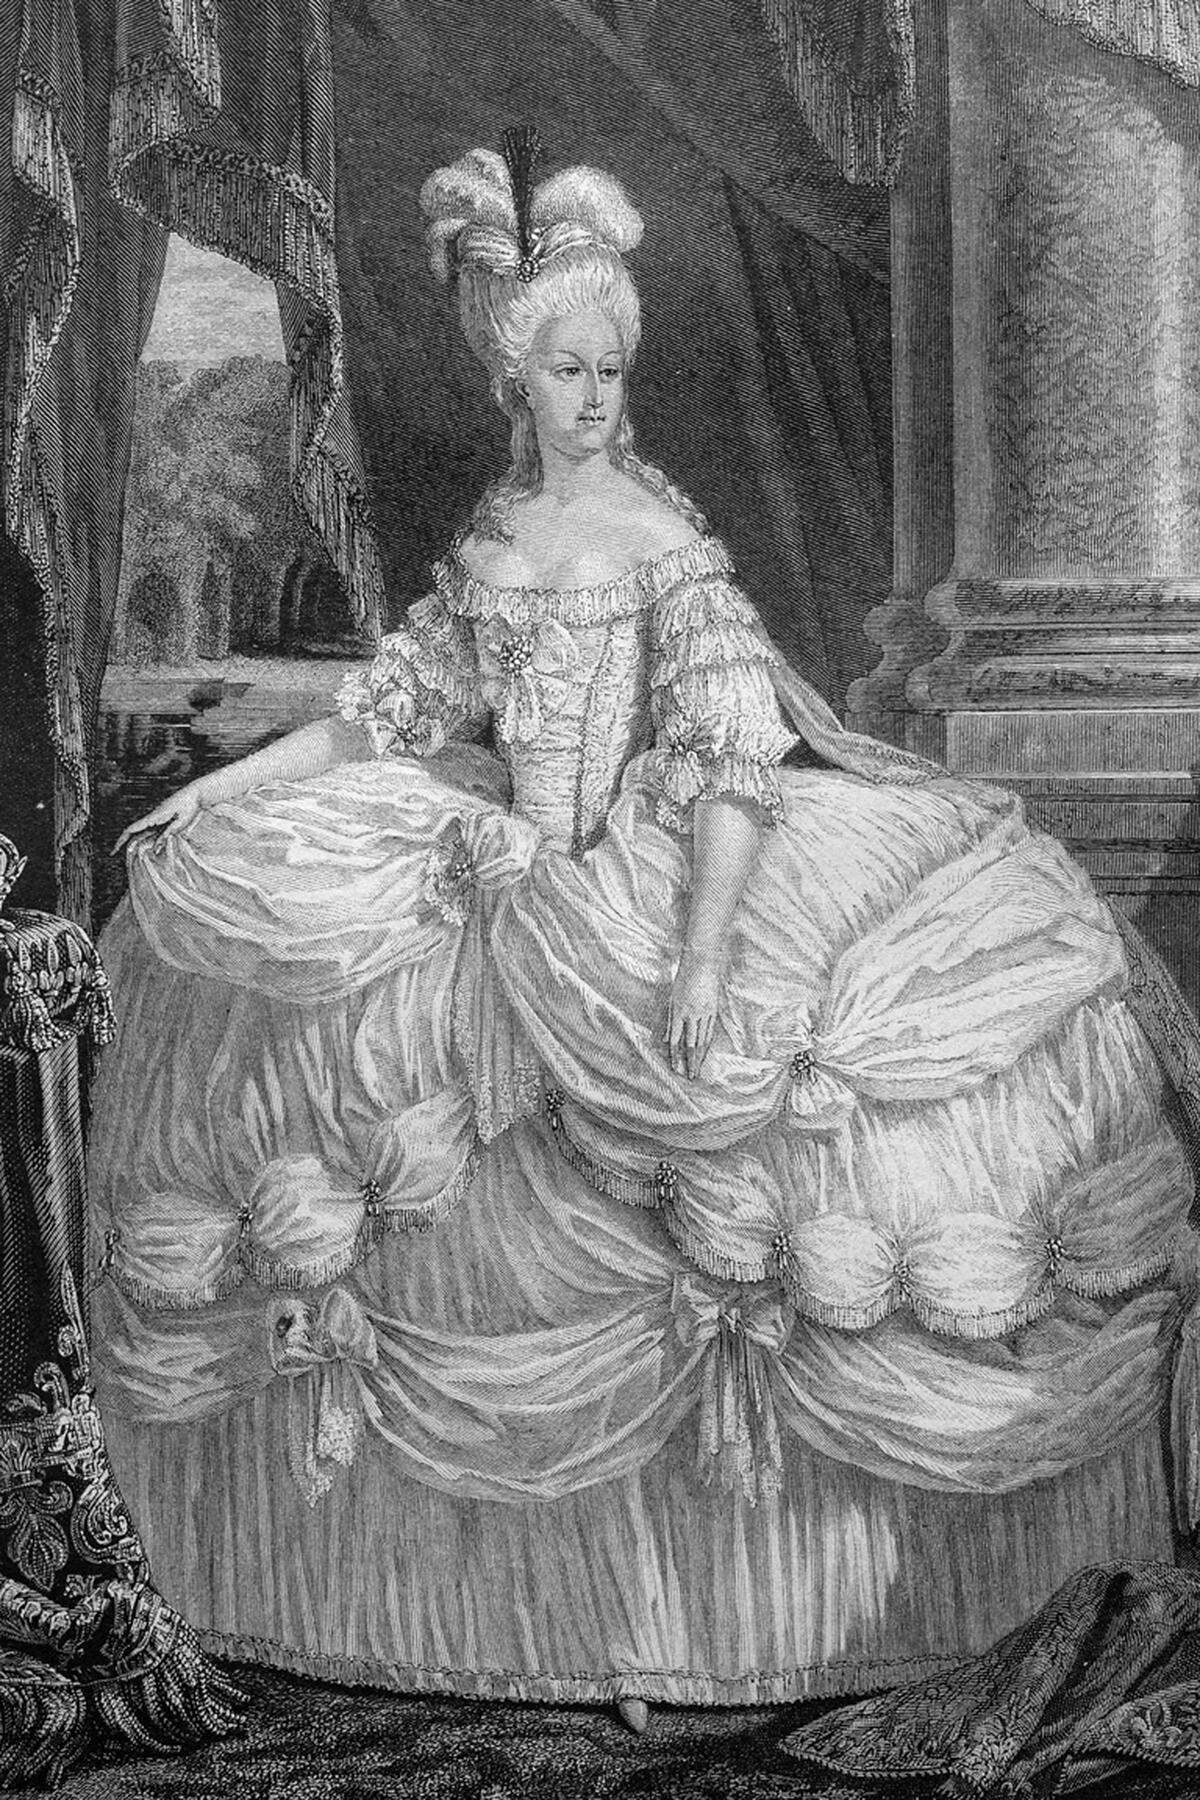 Als Inbegriff von Arroganz und Dekadenz gilt der angebliche Ausspruch der französischen Königin Marie Antoinette: "Die Leute haben kein Brot? Sollen sie doch Kuchen essen!" ("S'ils n'ont pas de pain, qu'ils mangent de la brioche"). Doch das Zitat legte der Schriftsteller Jan-Jacques Rousseau in "Les Confessions" einer "großen Fürstin" schon um 1766 in den Mund - als Maria Antonia Anna Josepha Johanna von Habsburg-Lothringen, wie sie damals noch hieß, erst zehn Jahre alt war. Während der Französischen Revolution wurde der verhassten Königin der Ausspruch zugeschrieben, weil er für sie passend erschien.